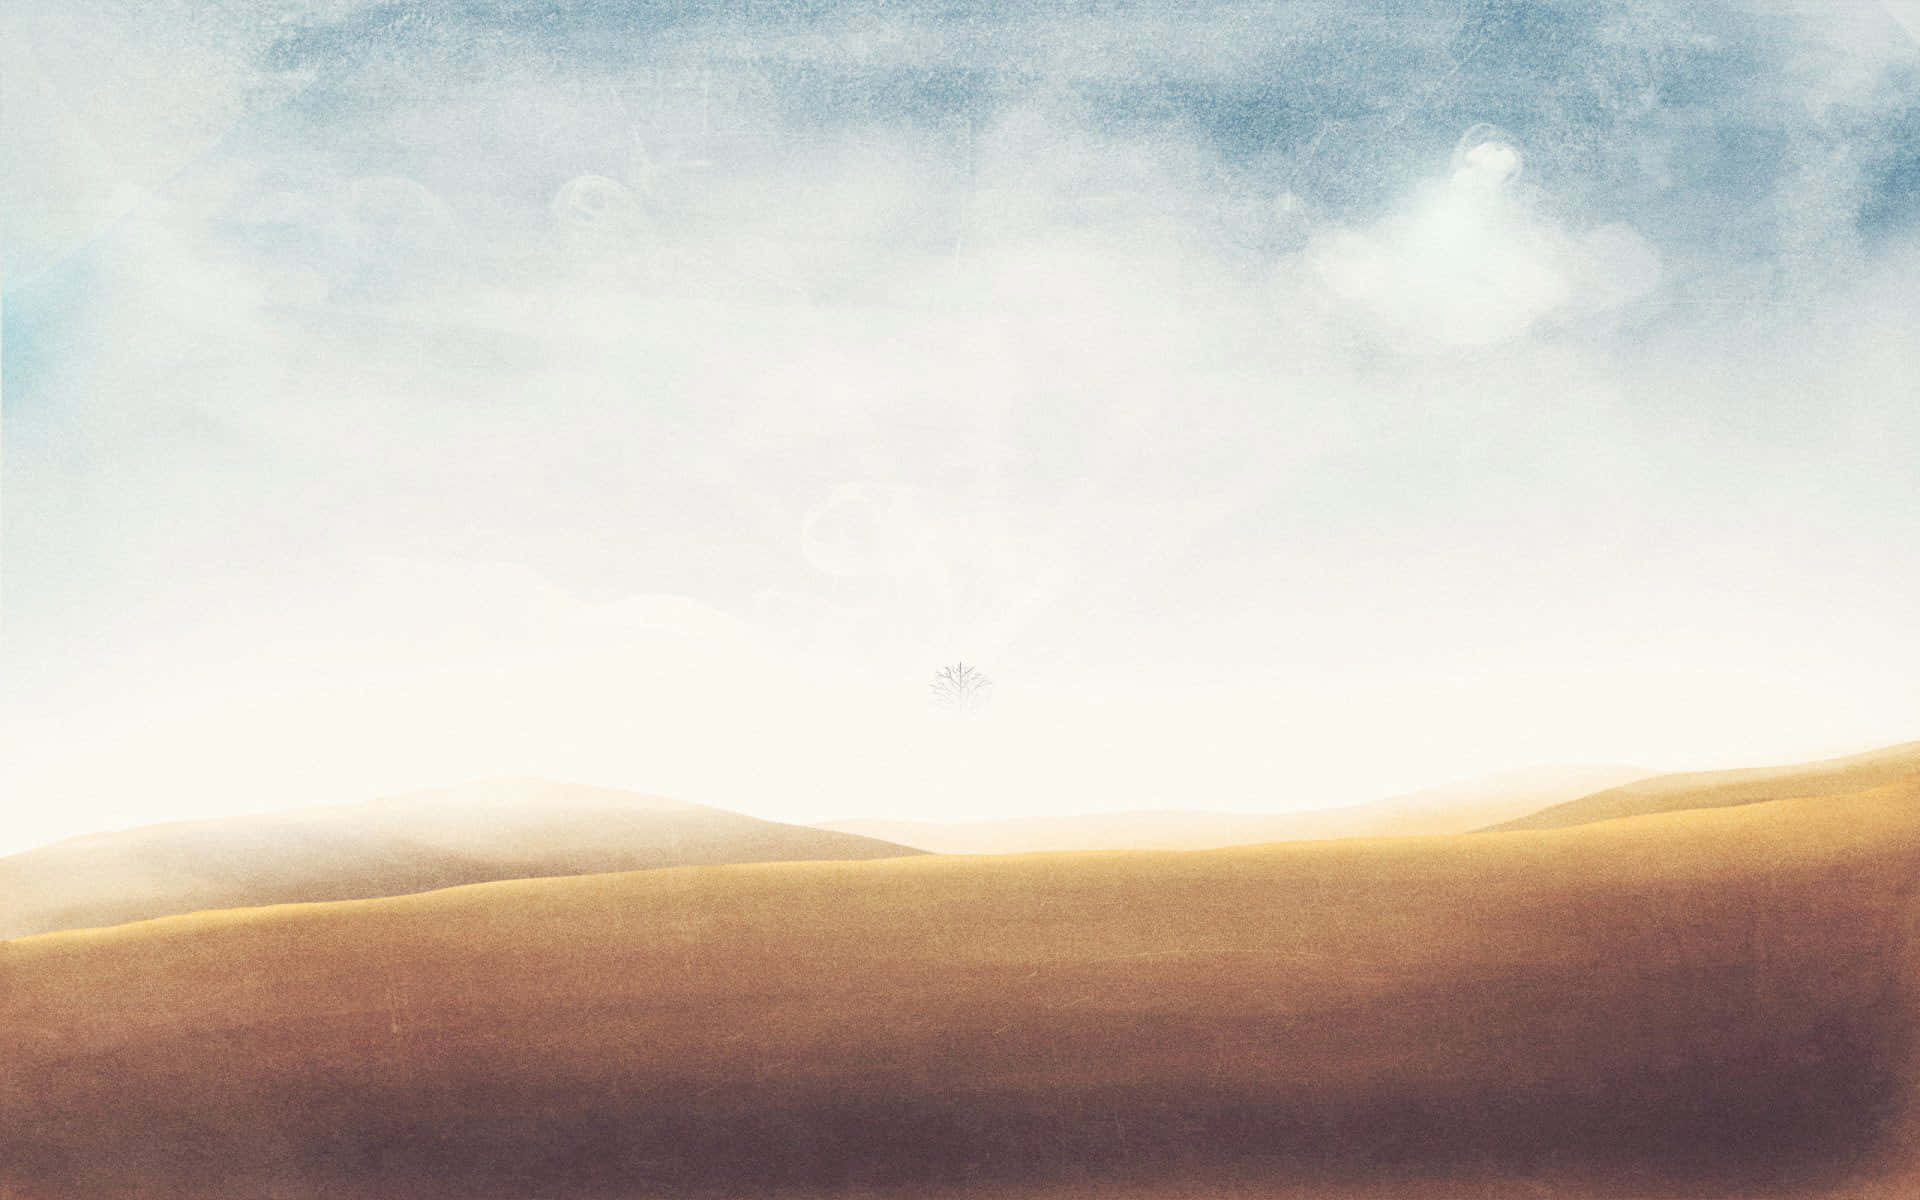 Bästaminimalistiska Bakgrundsbild Med Sanddyner